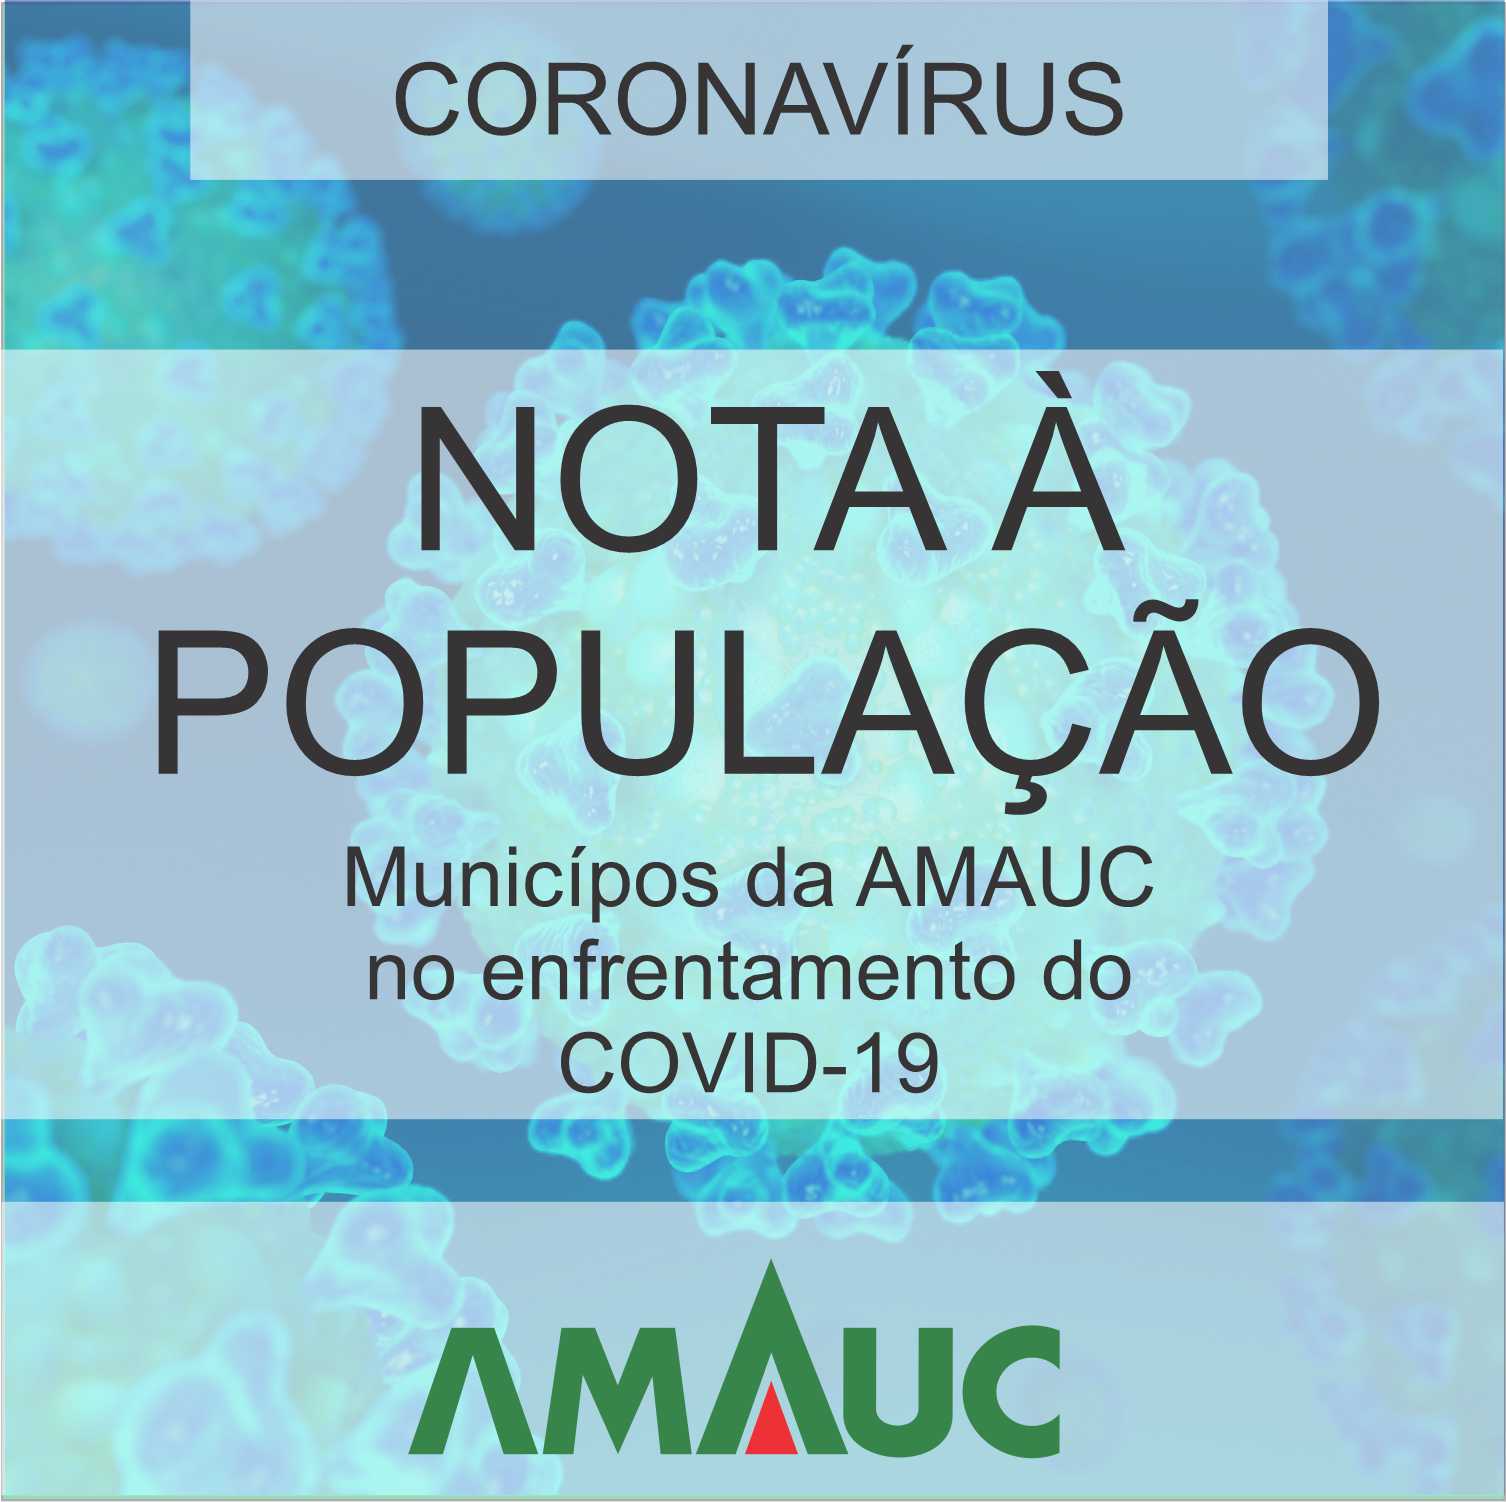 You are currently viewing Municípios da Amauc no enfrentamento do COVID-19